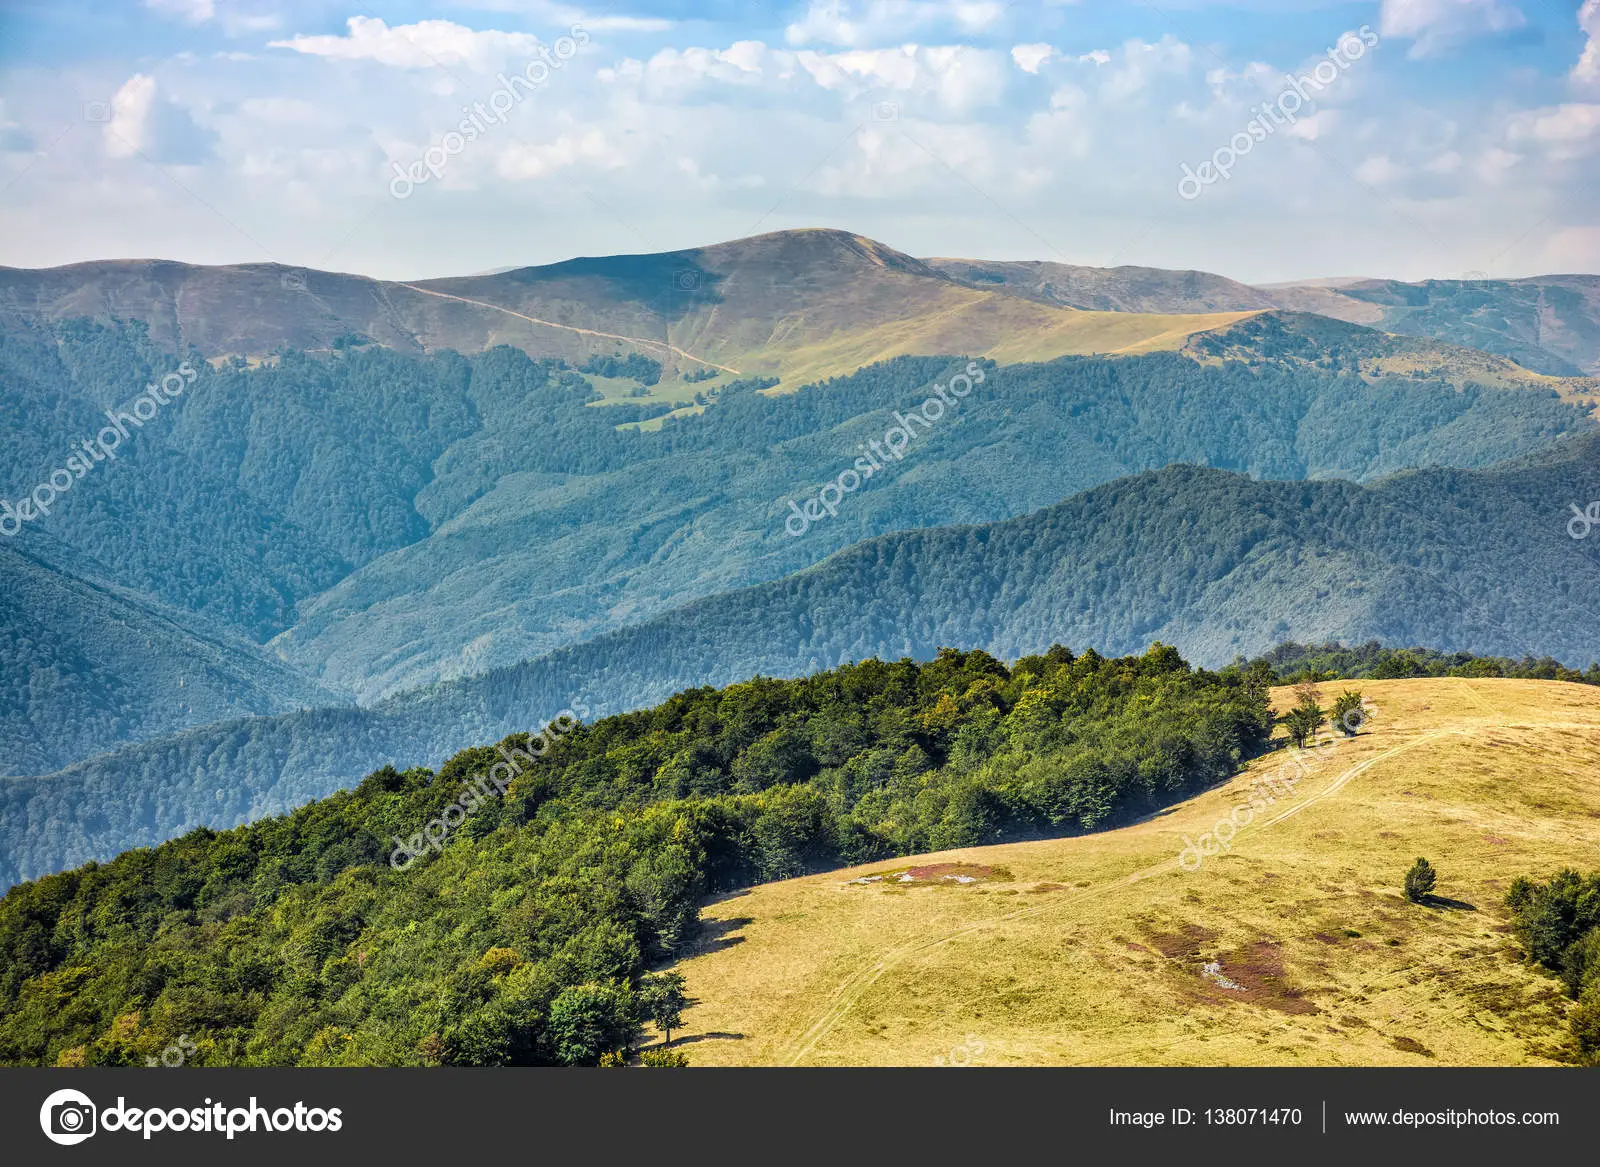 Carpathian Mountain Range in late summer